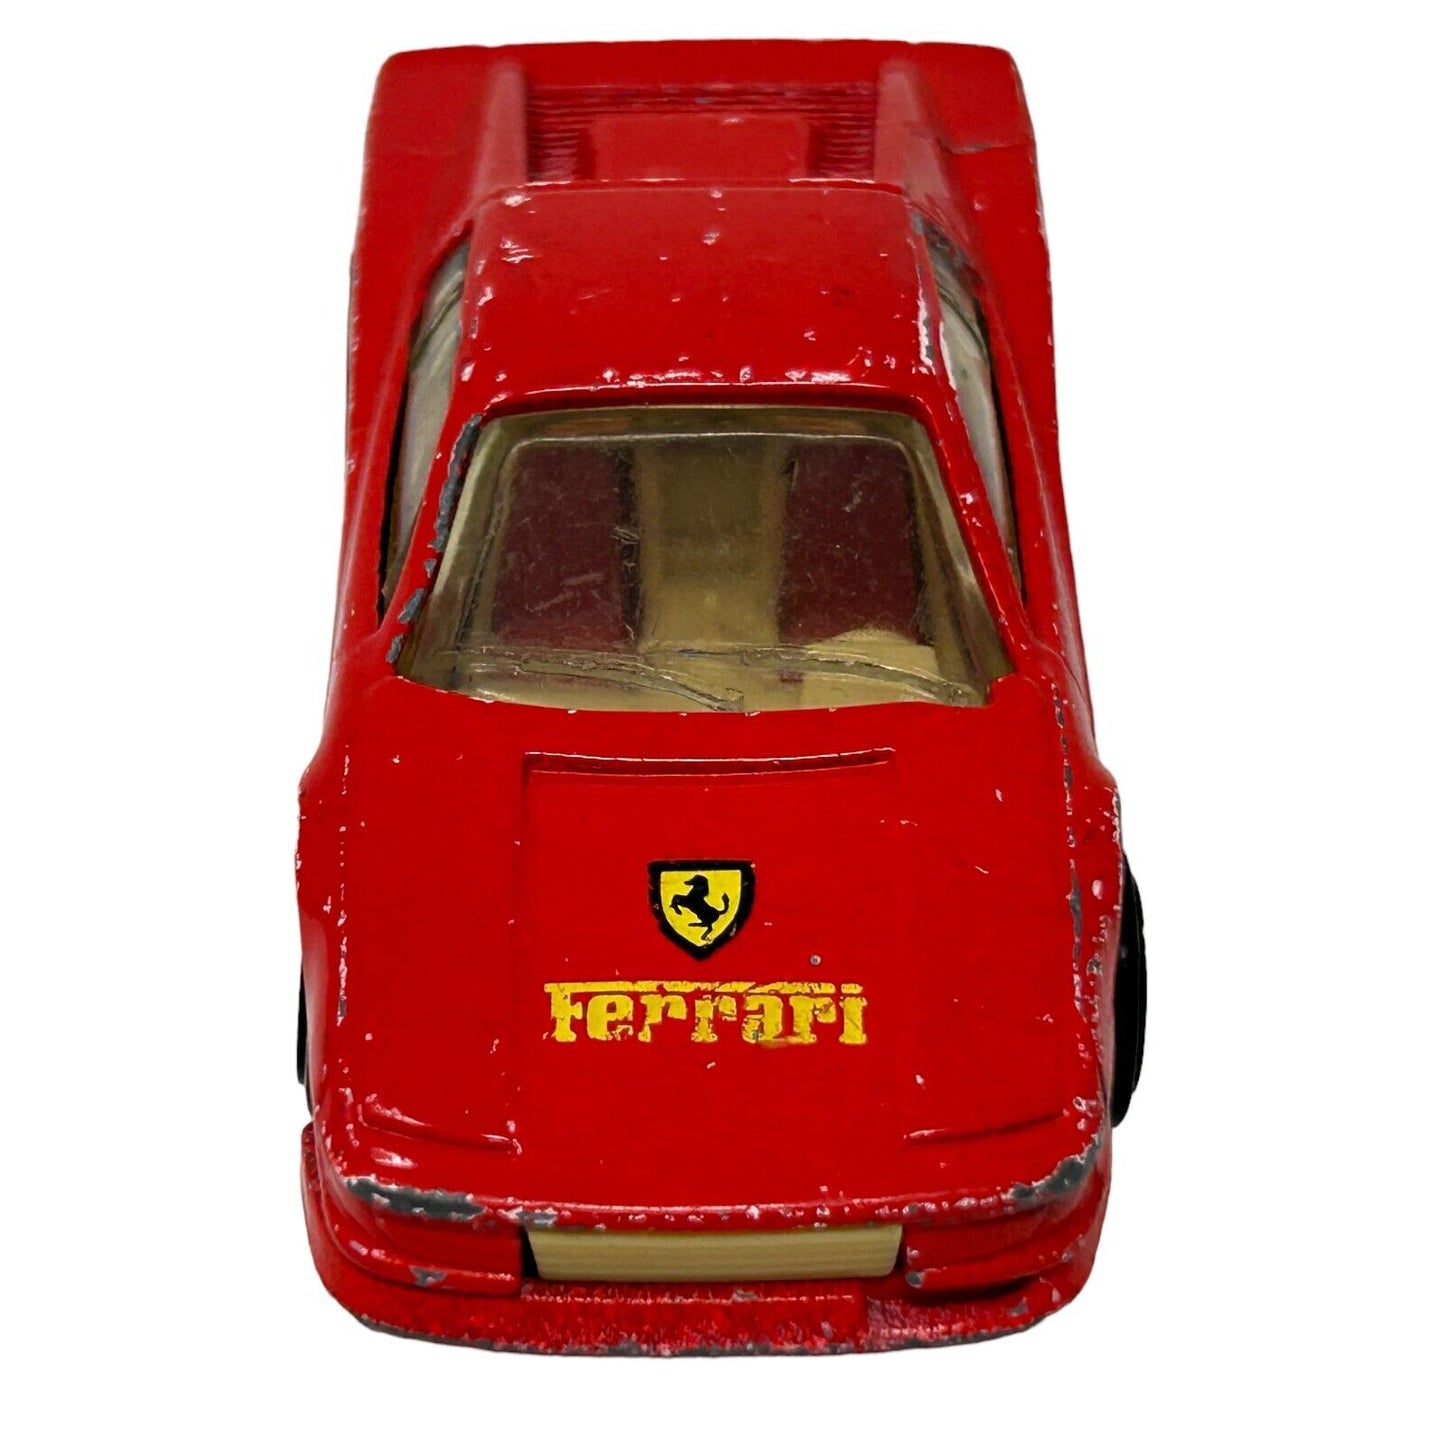 Ferrari Testarossa Hot Wheels Collectible Diecast Car Red Vehicle Vintage 80s